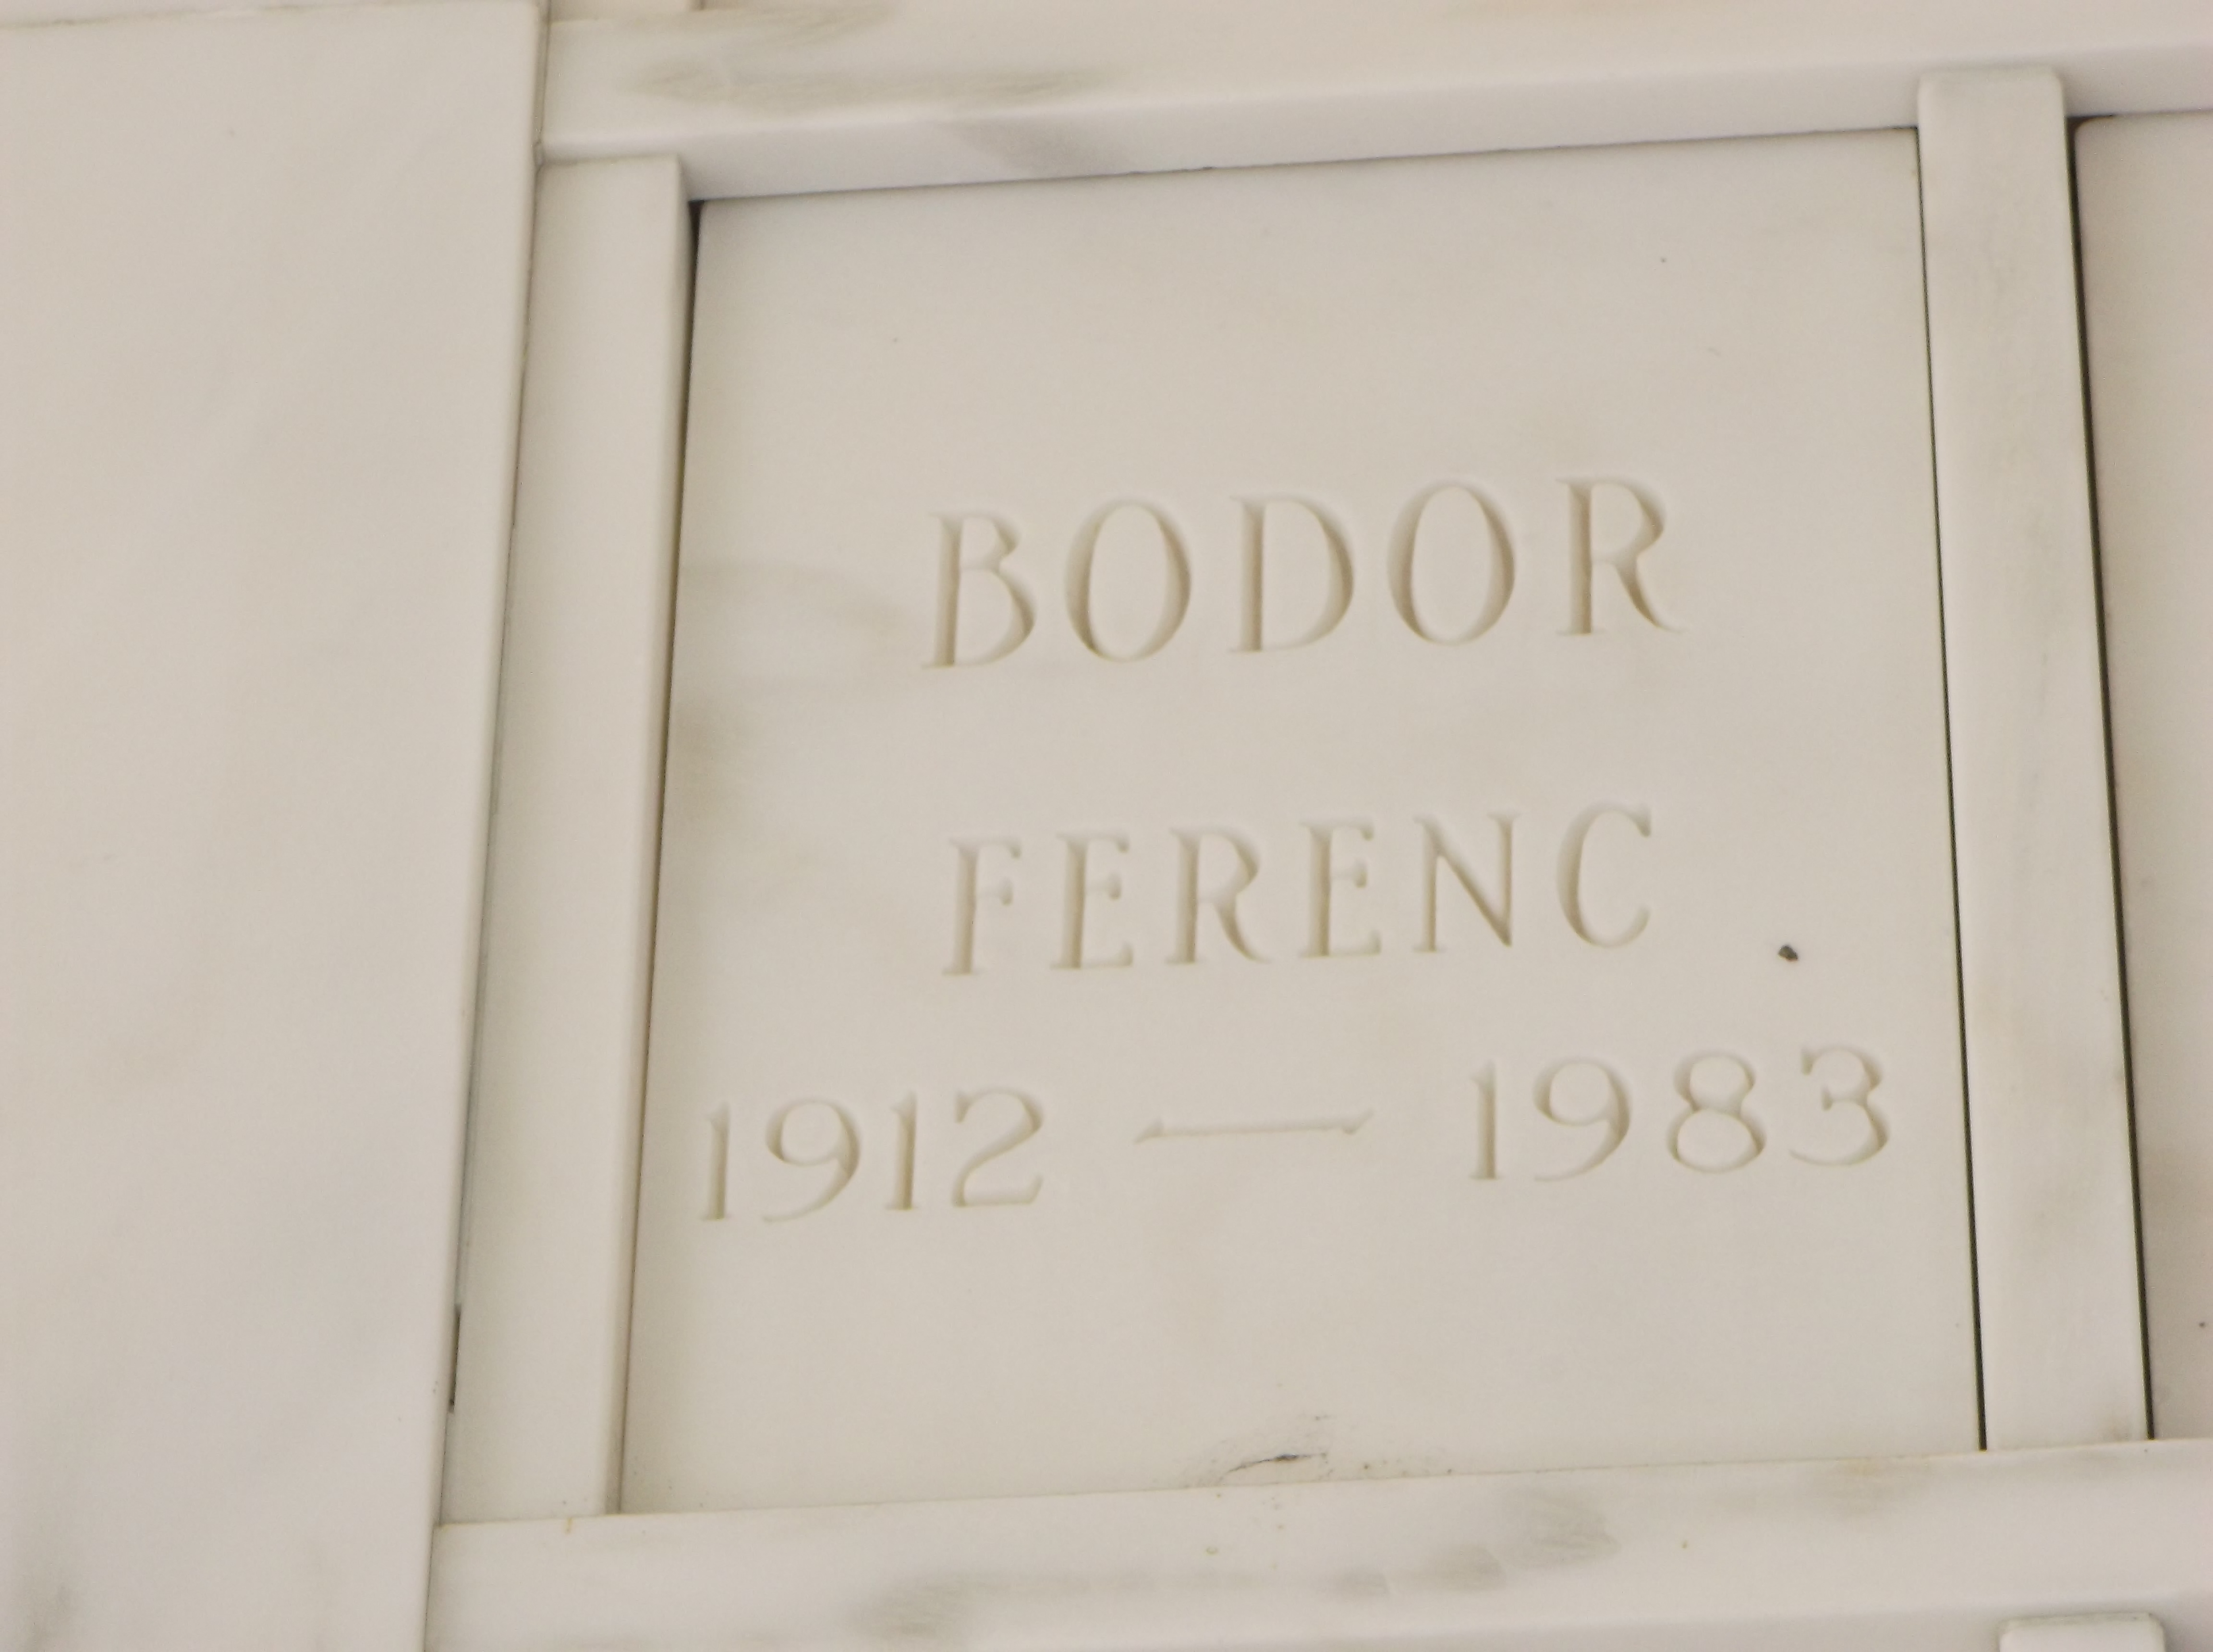 Ferenc Bodor